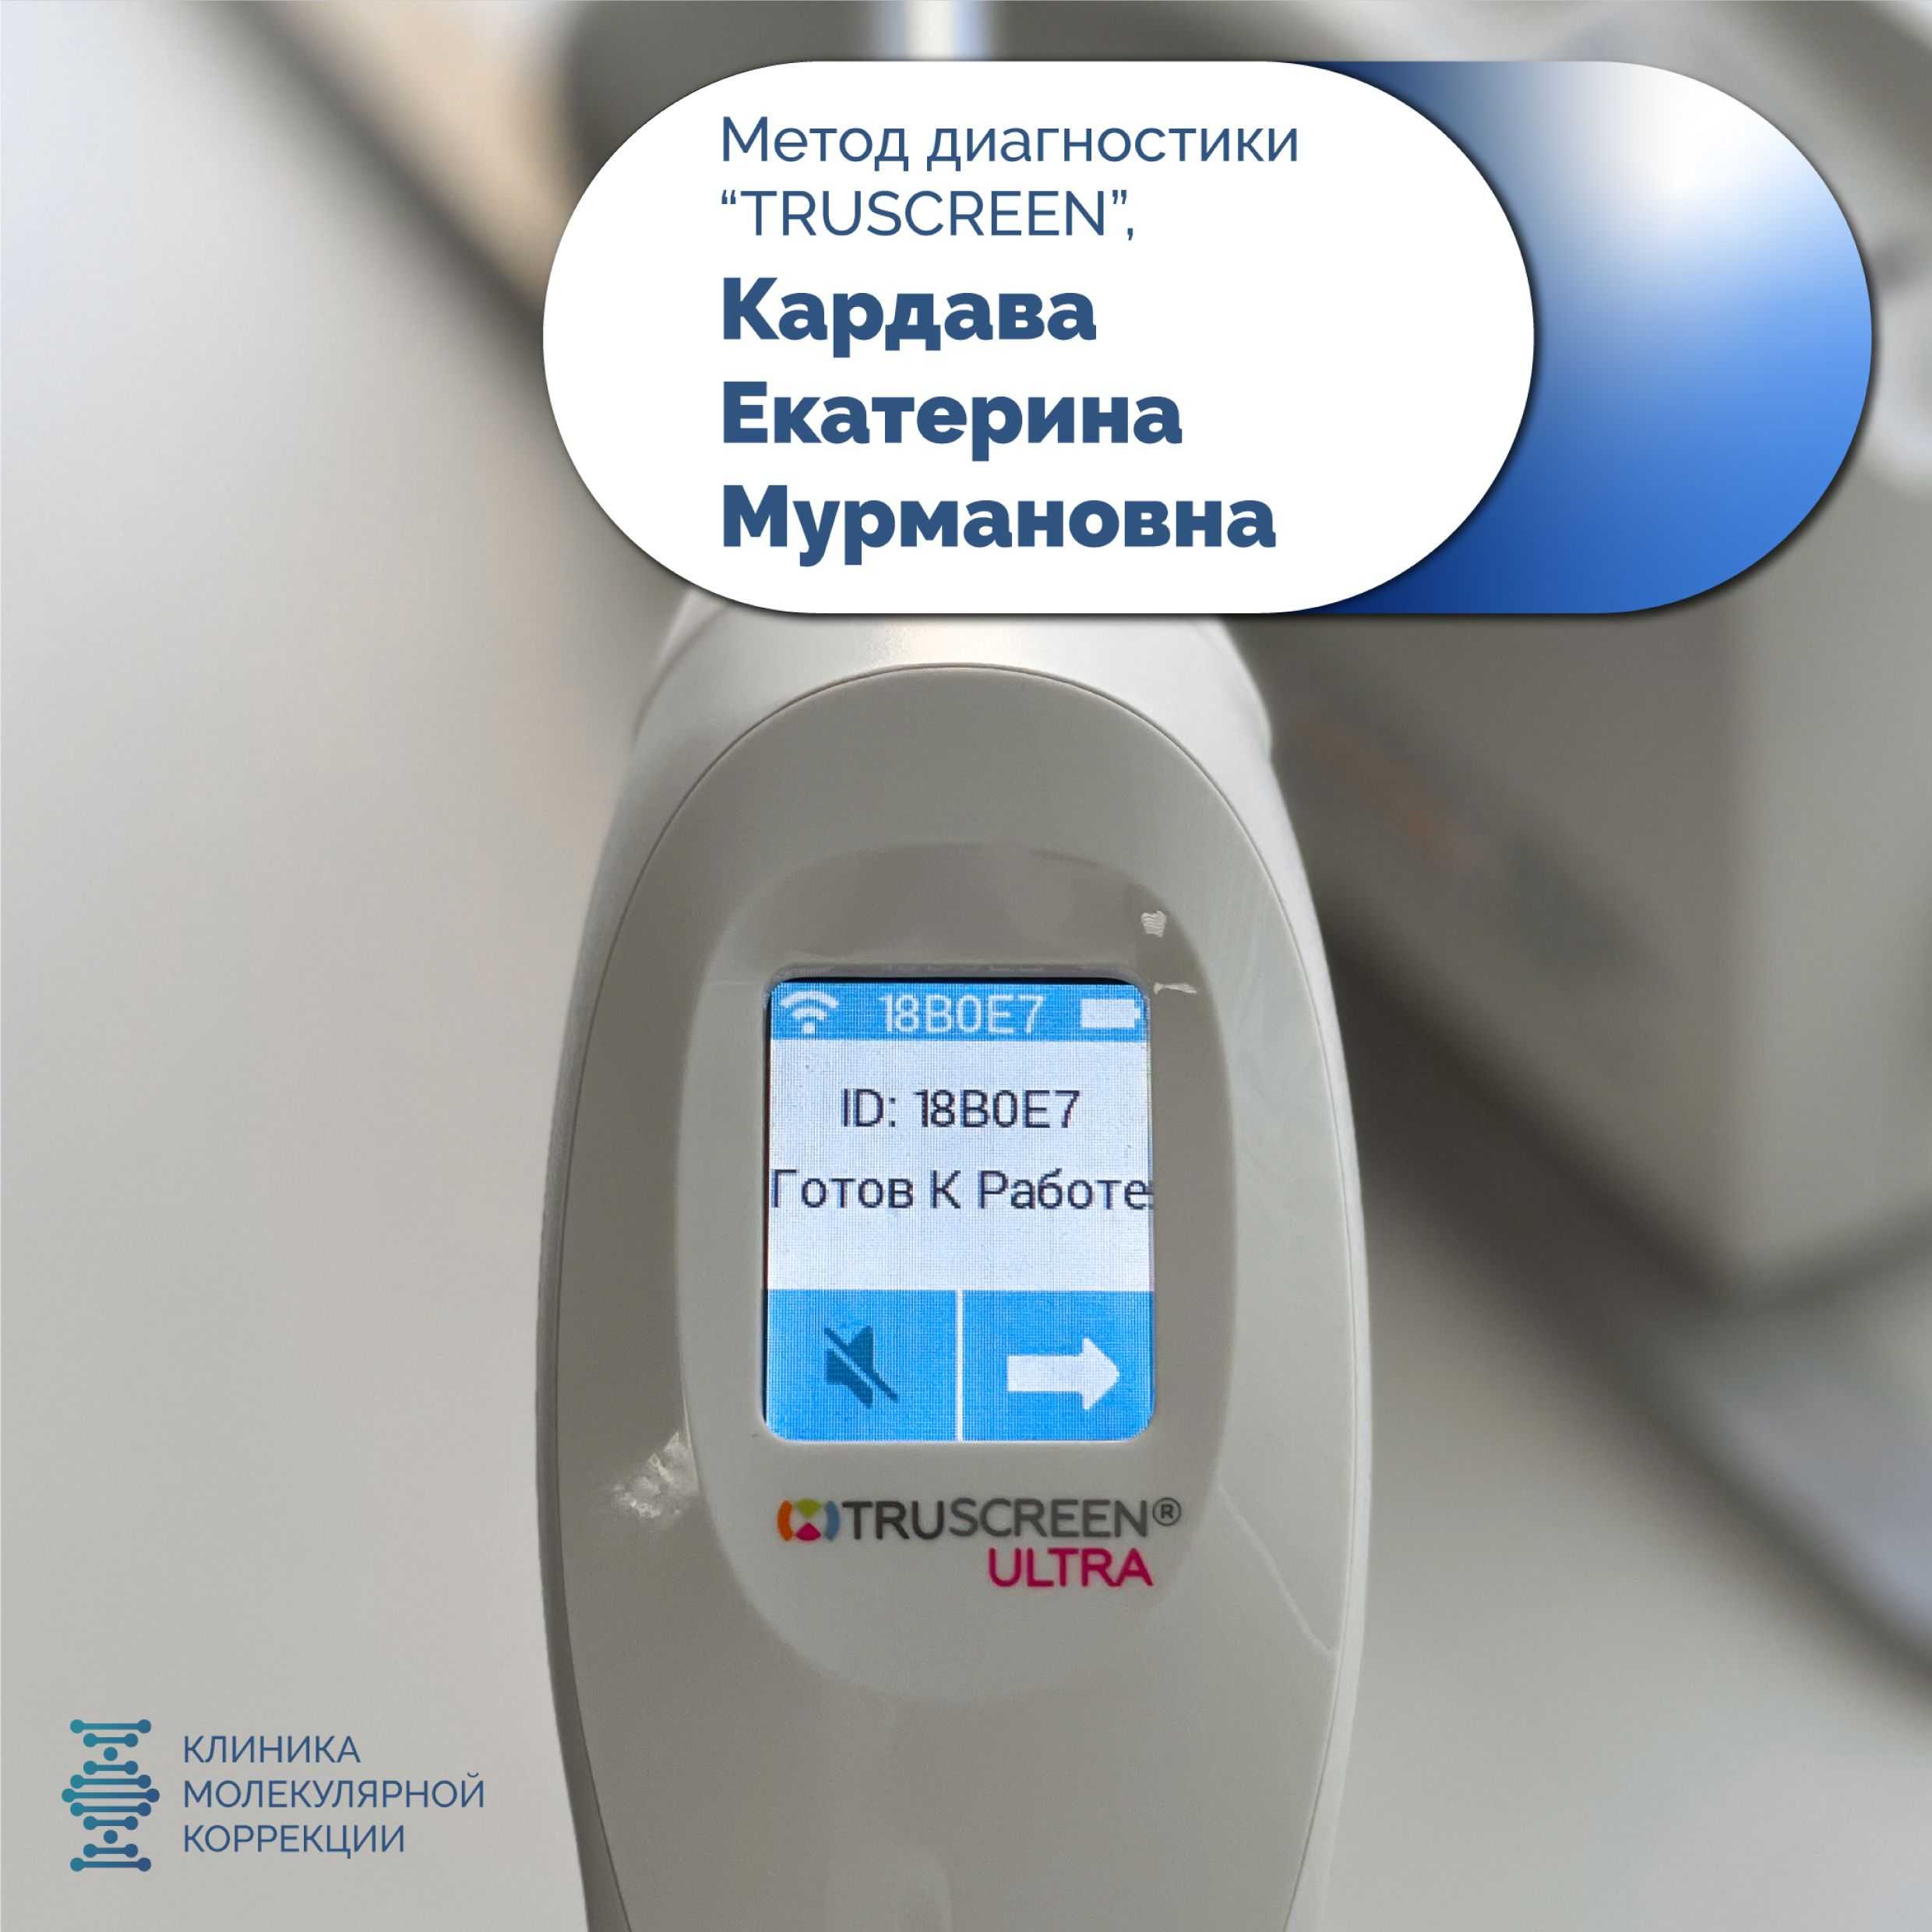 Врач Клиники Молекулярной Коррекции Кардава Екатерина Мурмановна рассказывает о методе диагностики TRUESCREEN!